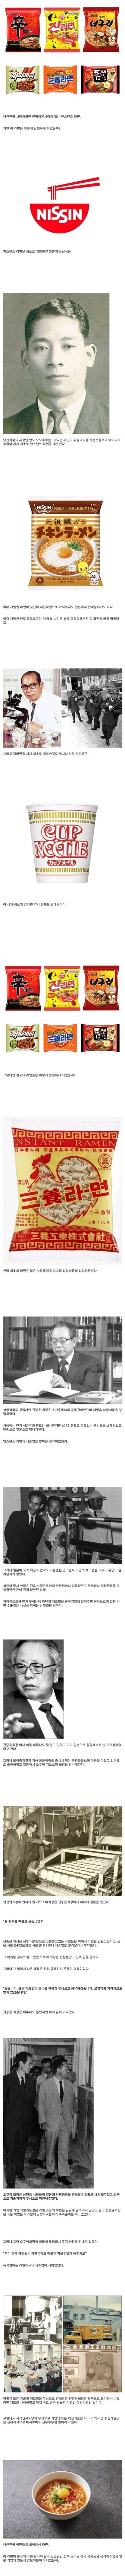 한국에 라면이 탄생한 계기